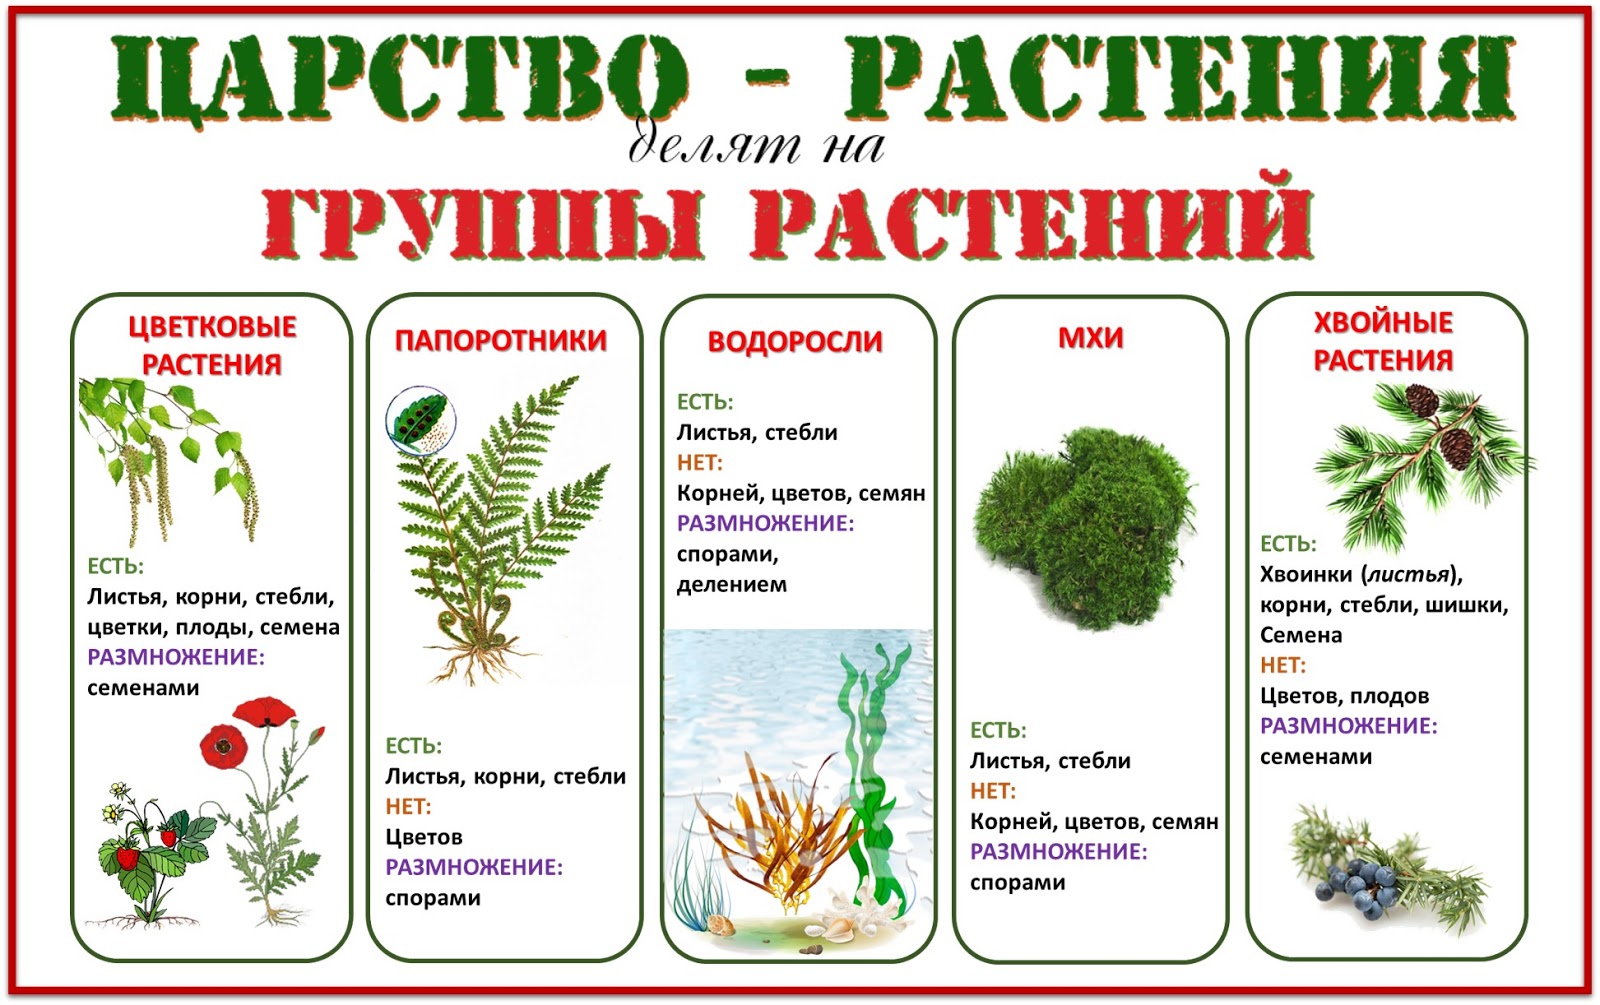 Примеры про растения. Группы растений. Деление растений на группы. Царство растений. Группы царства растений.